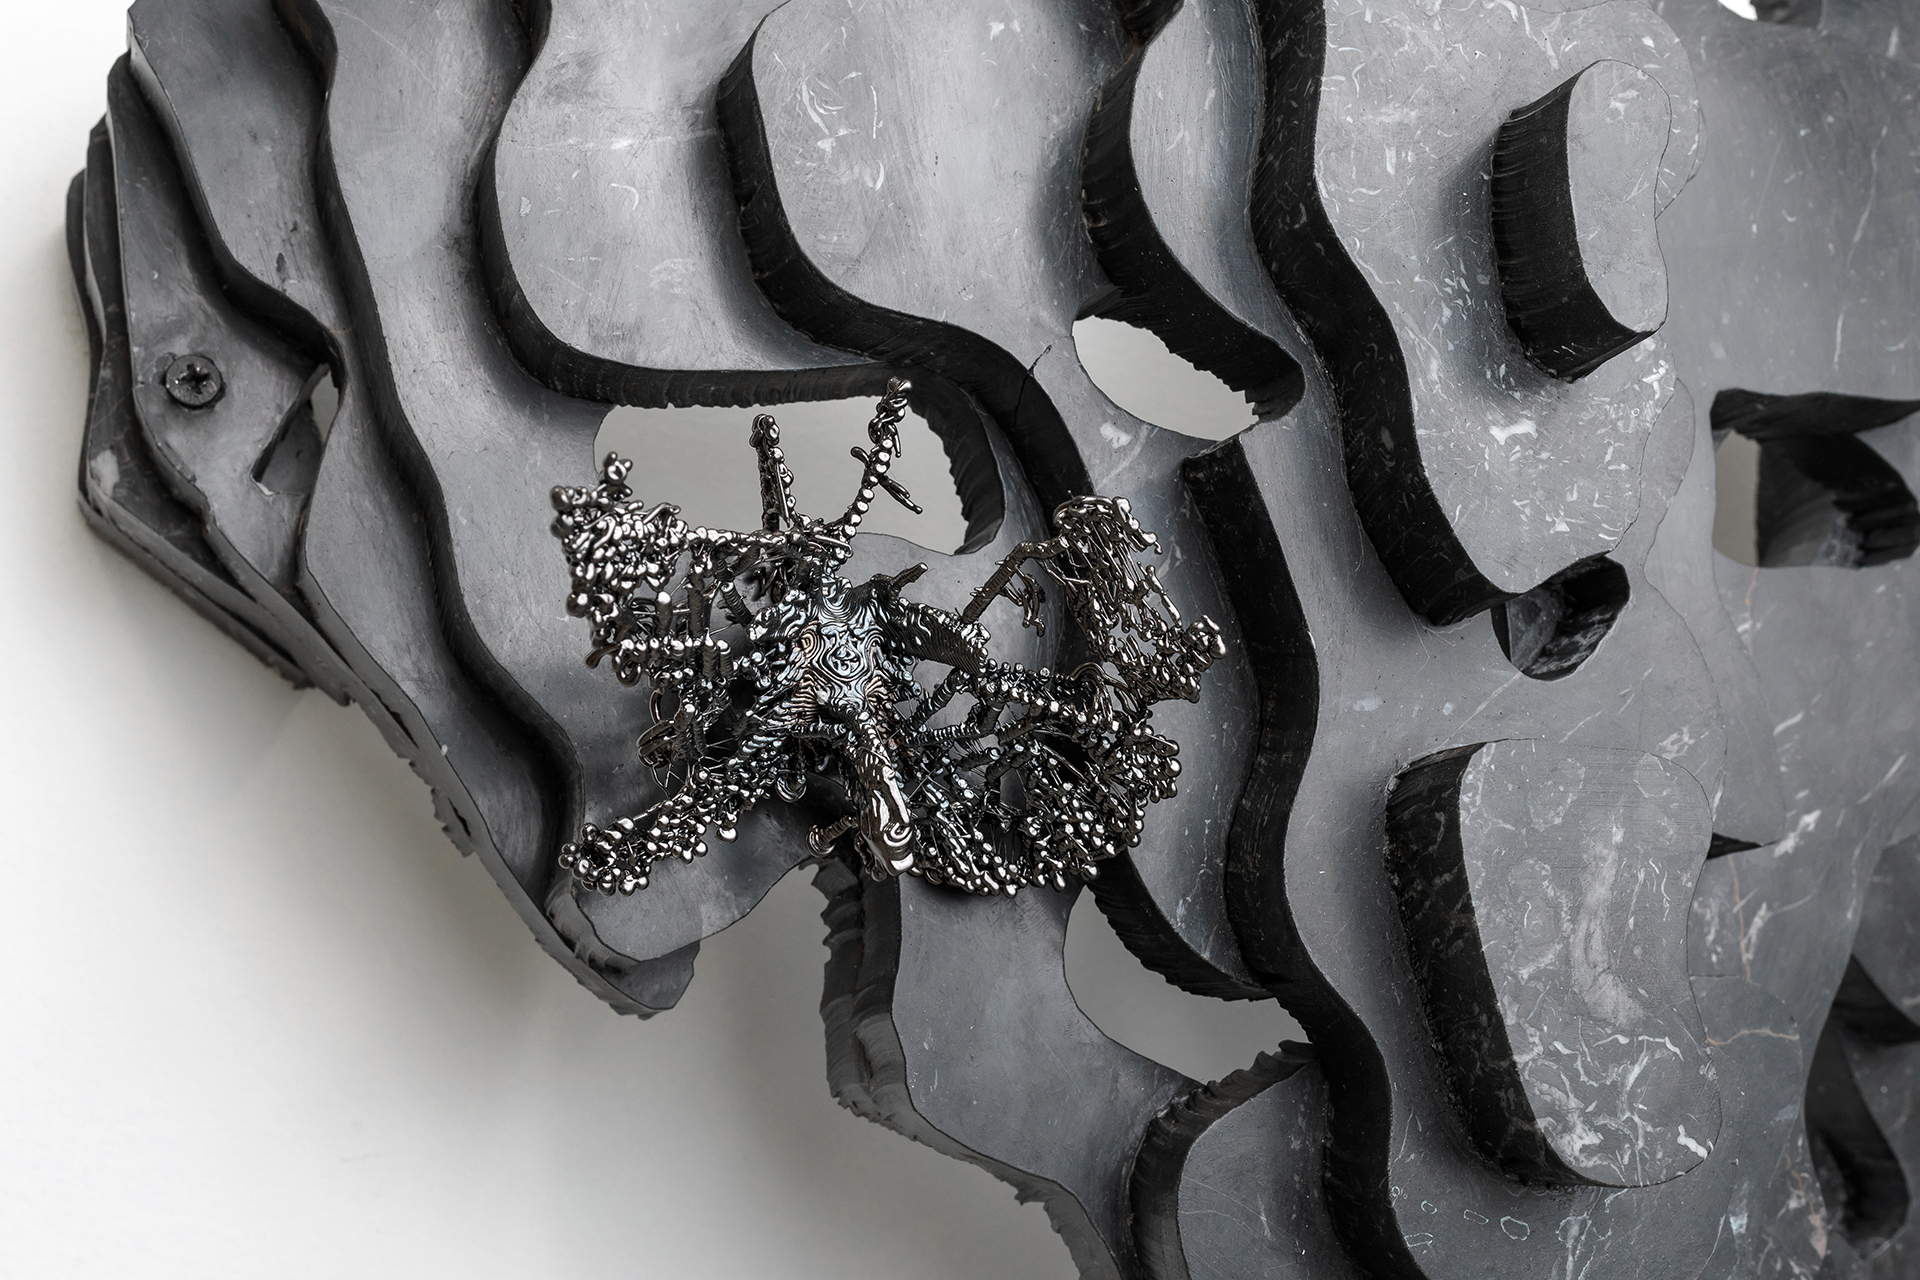 Petros Moris, Membrane (Metamorphosis II), 2020, Marble, nickel-plated copper electroformed PLA, 82 x 50 x 20 cm, Detail